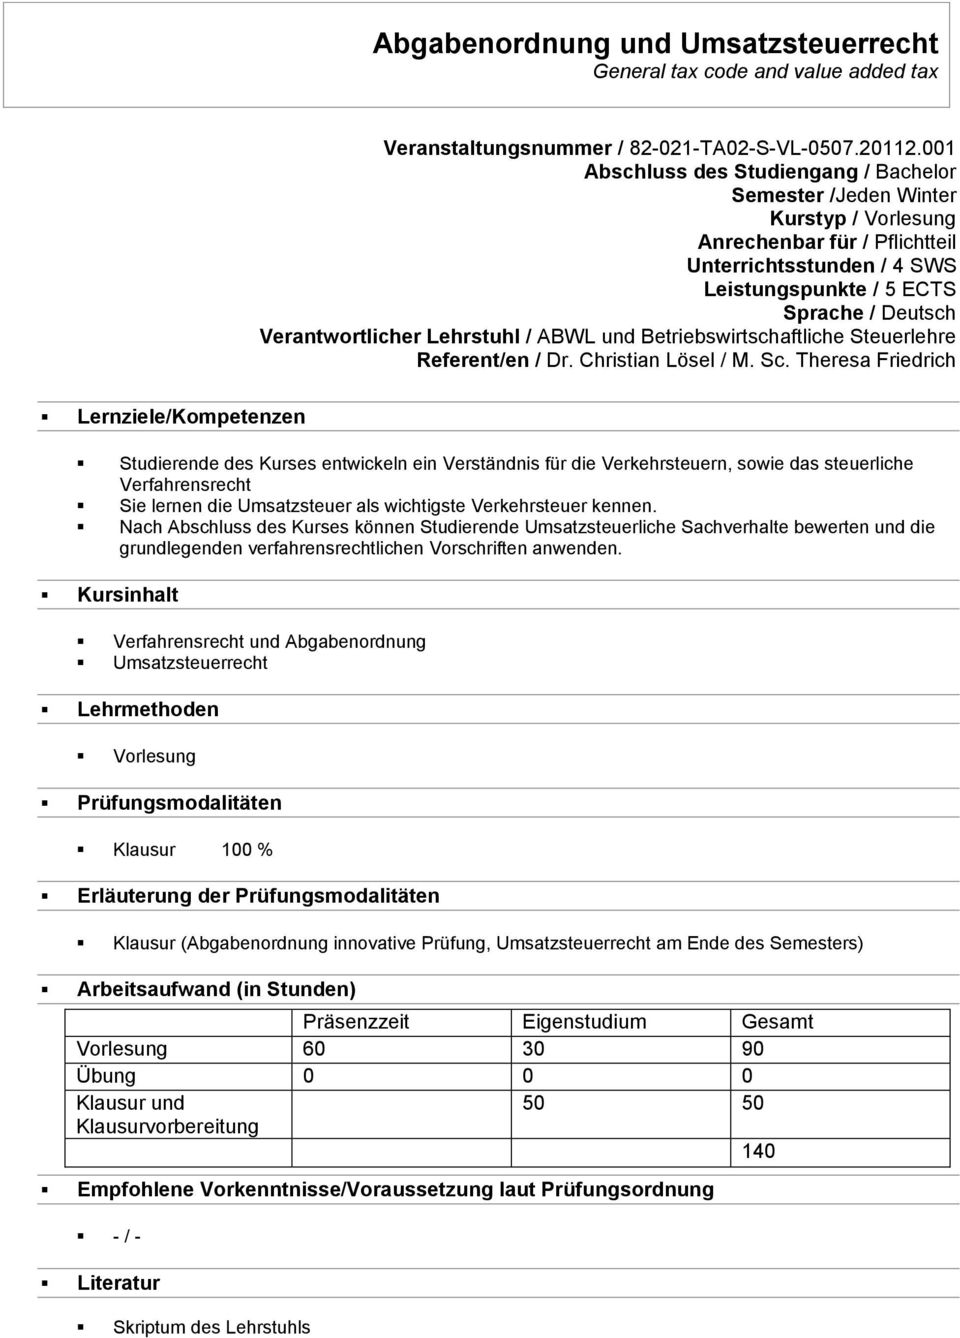 Verantwortlicher Lehrstuhl / ABWL und Betriebswirtschaftliche Steuerlehre Referent/en / Dr. Christian Lösel / M. Sc.